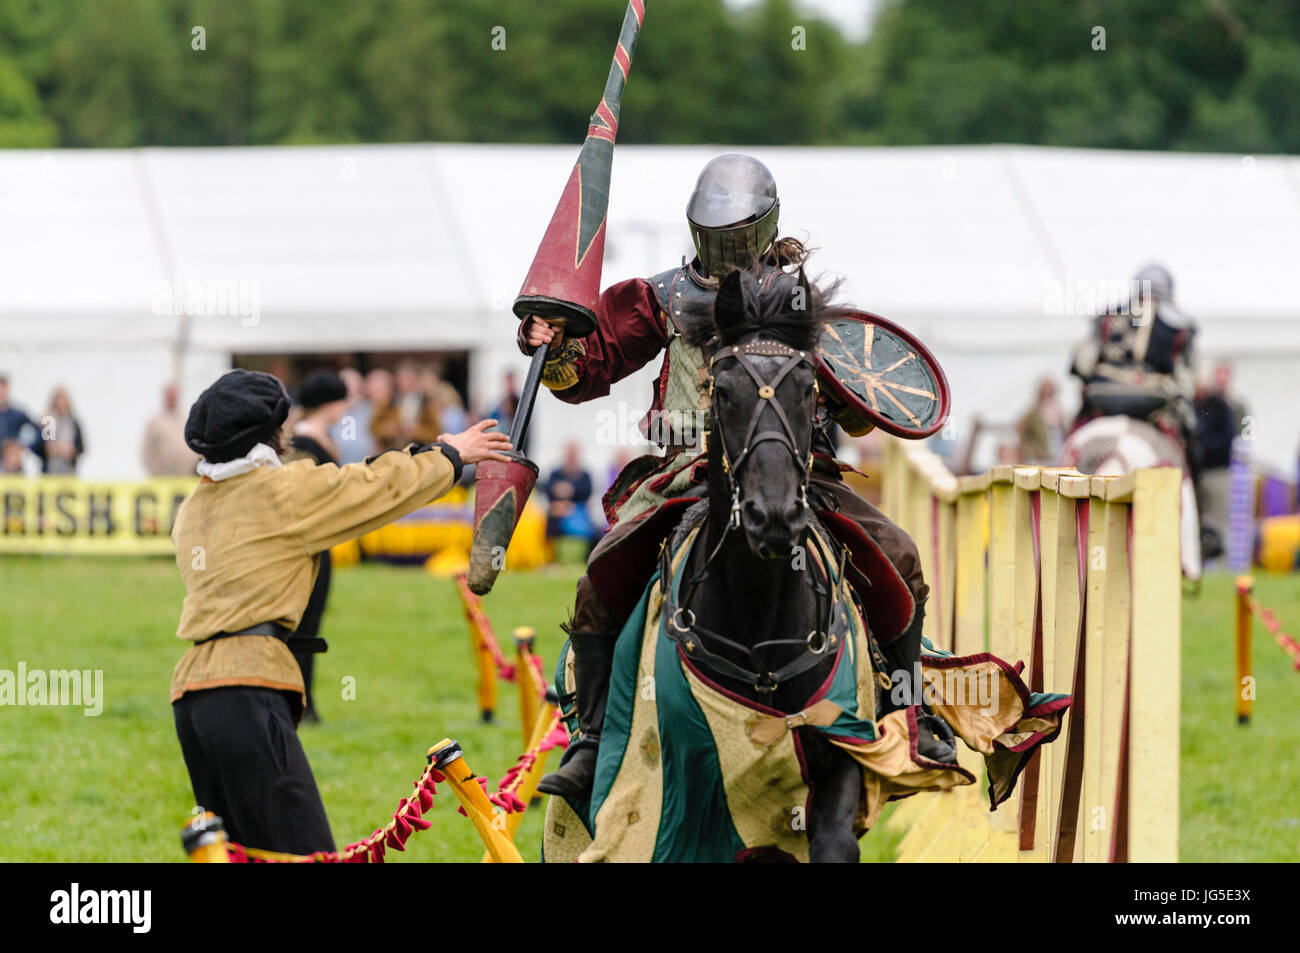 A Knight's squire prend une lance de son chevalier après une joute. Banque D'Images